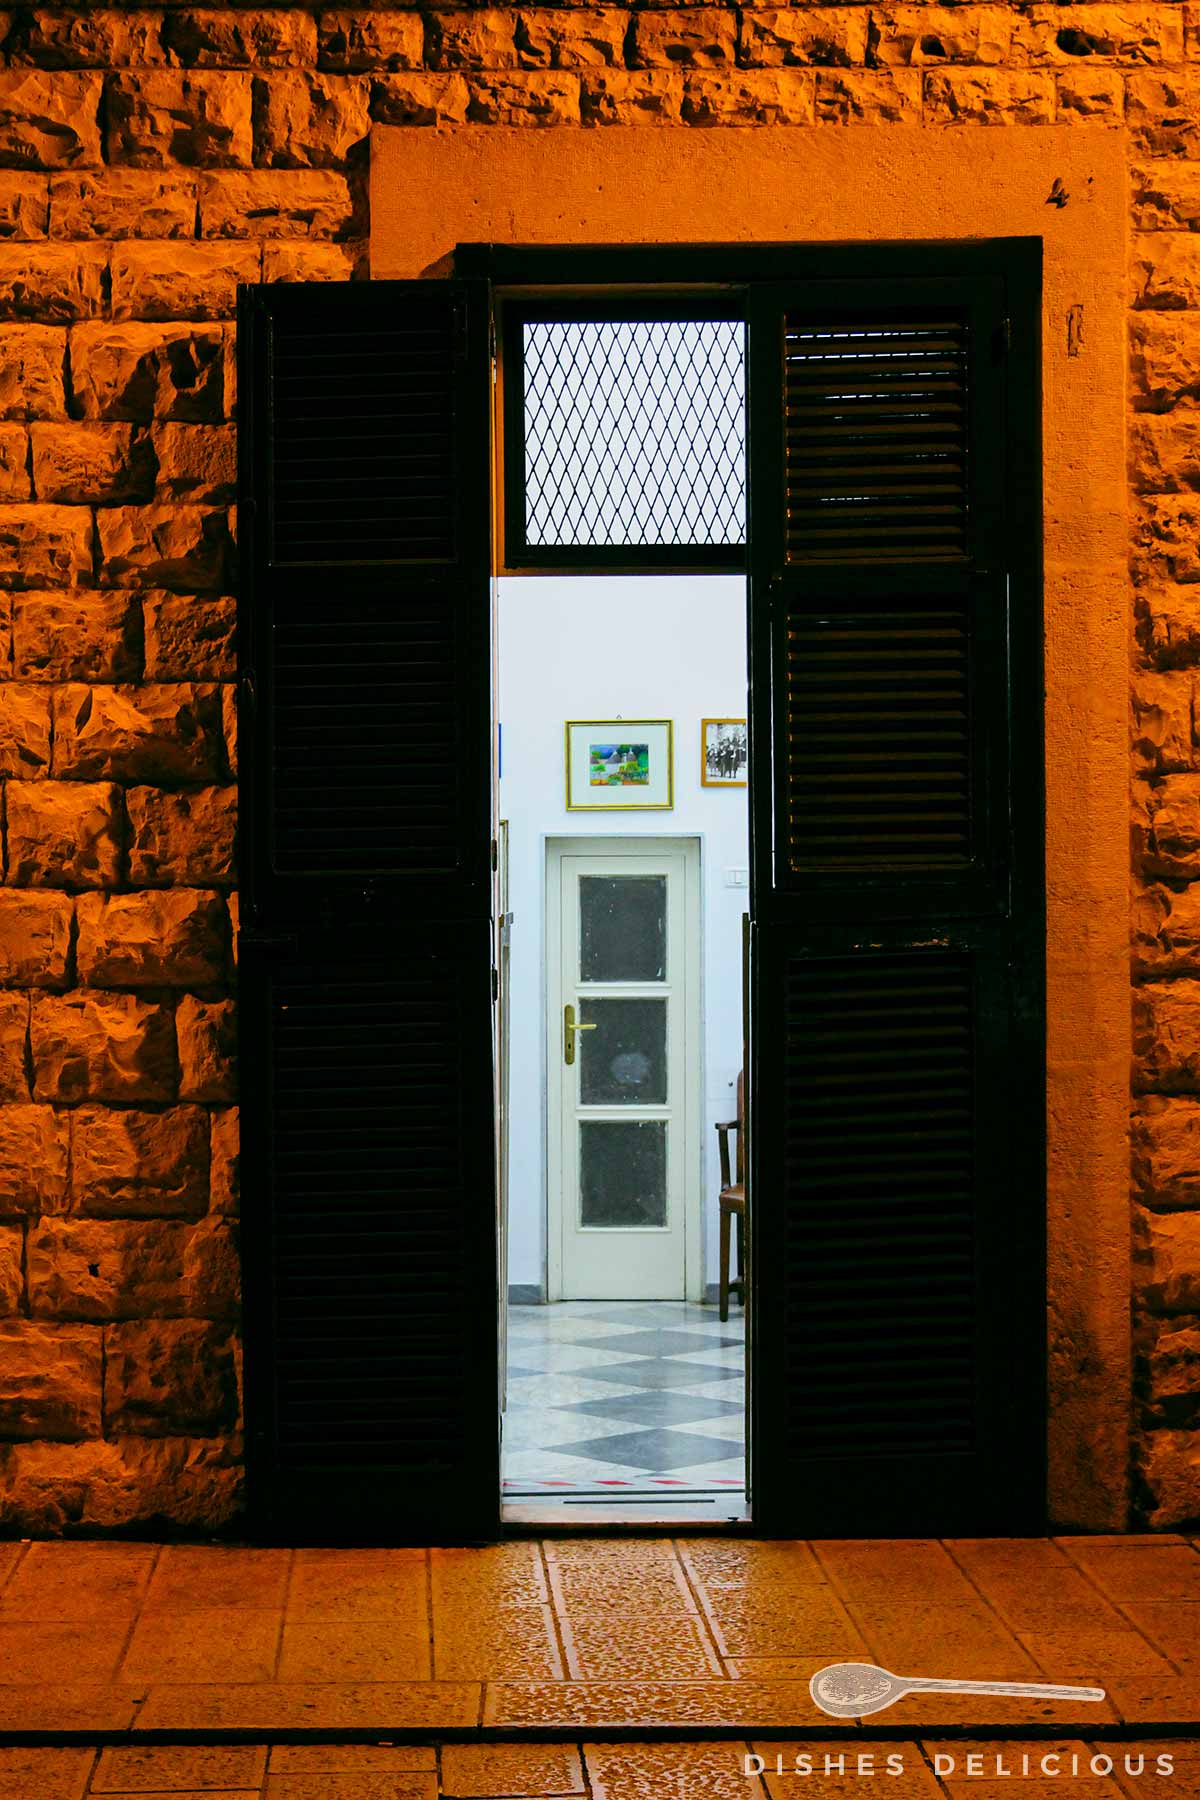 Eine offene Tür eines Hauses am Abend, die zu einer weiteren Tür führt.